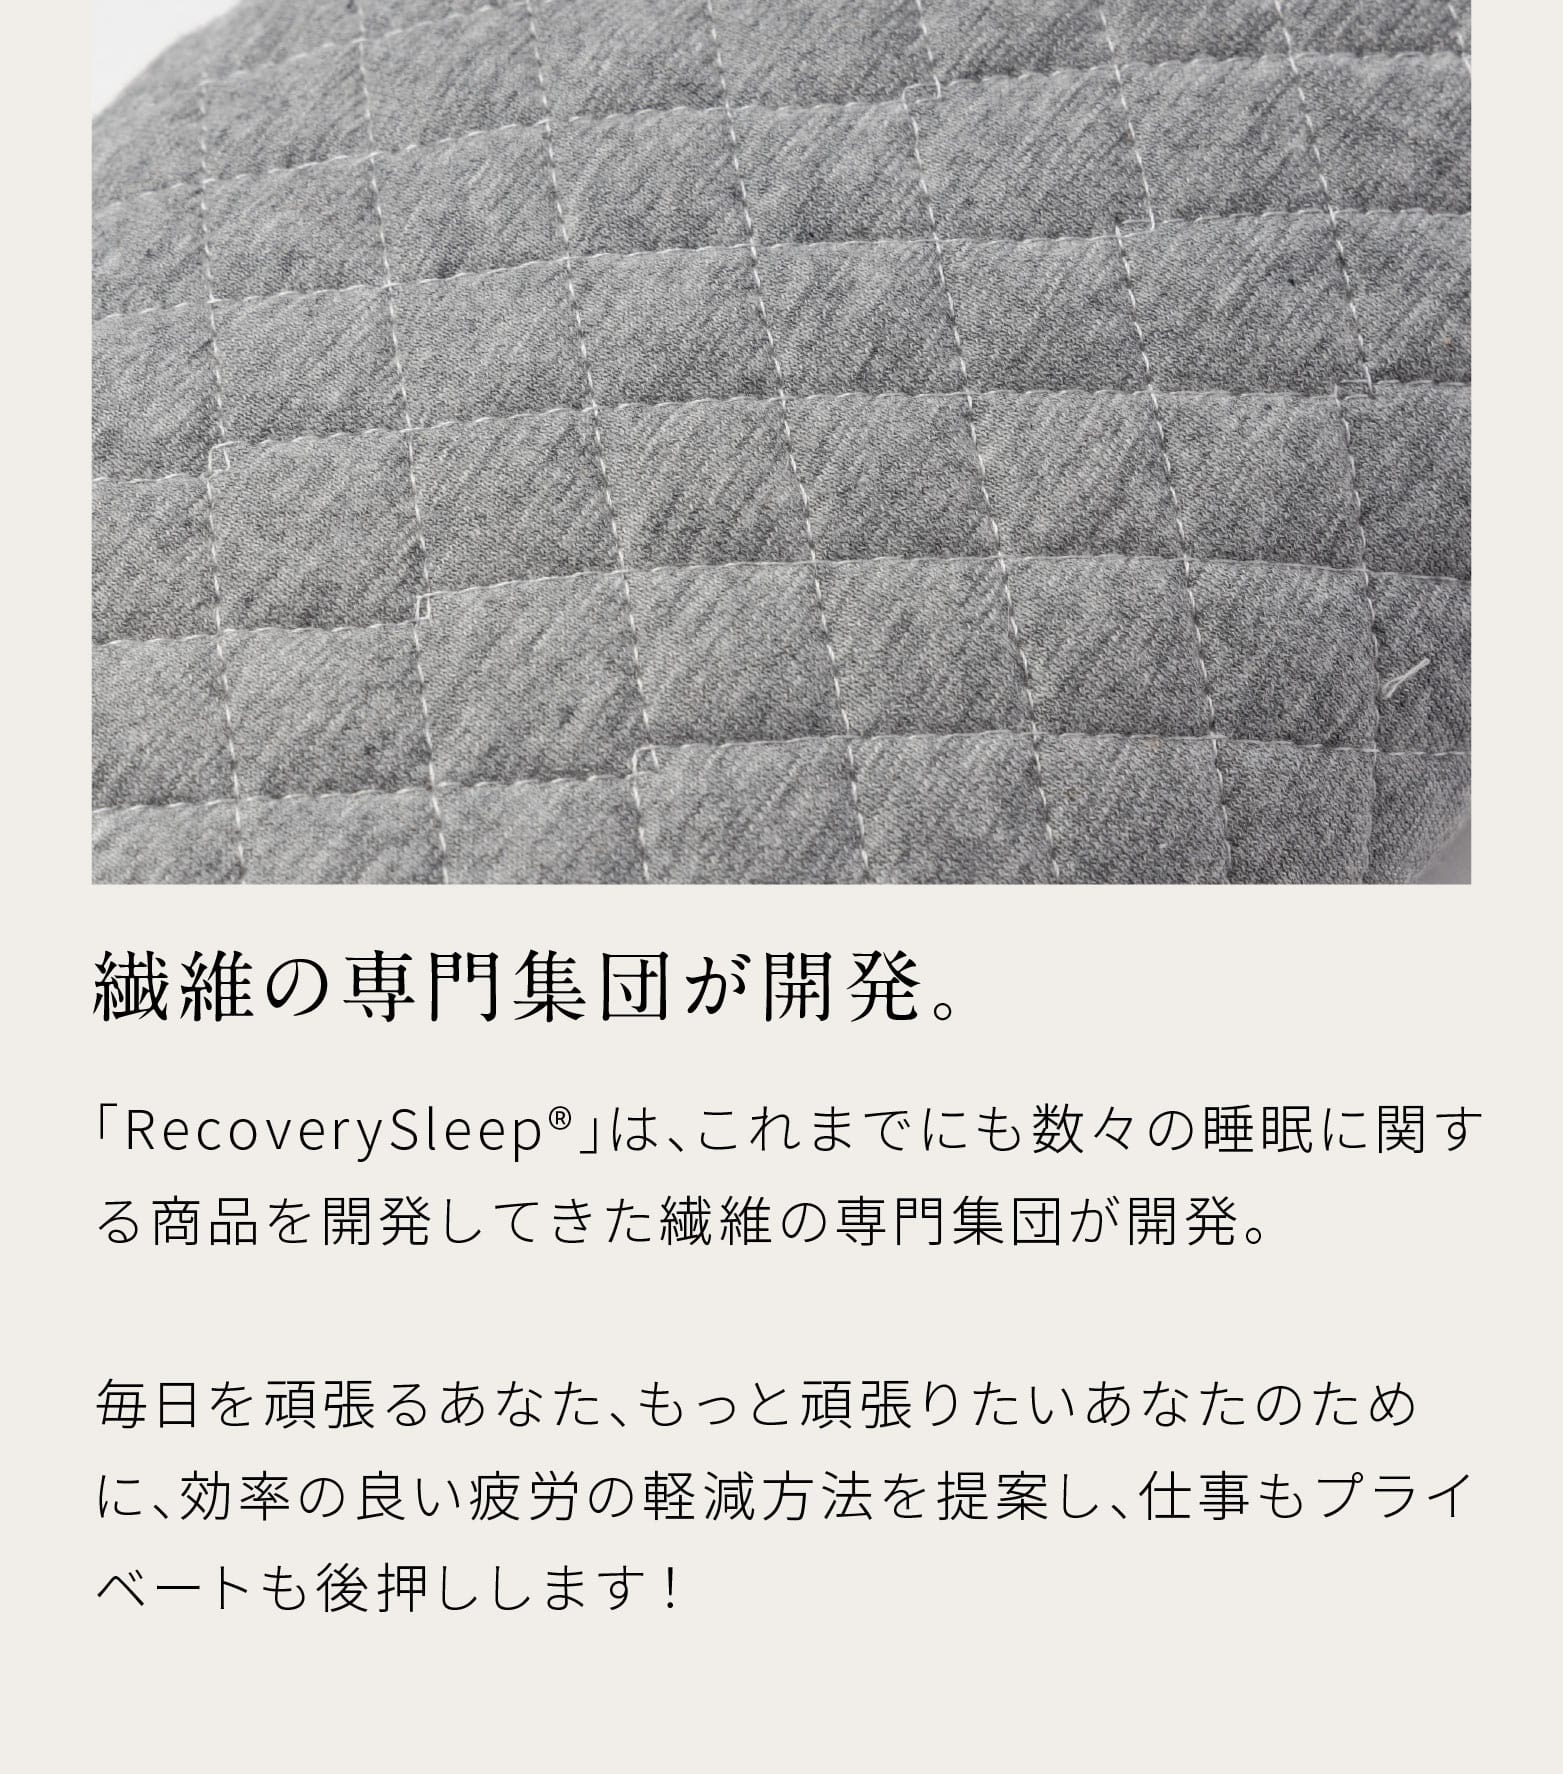 繊維の専門集団が開発。「RecoverySleep®」は、これまでにも数々の睡眠に関する商品を開発してきた繊維の専門集団が開発。毎日を頑張るあなた、もっと頑張りたいあなたのために、効率の良い疲労の軽減方法を提案し、仕事もプライベートも後押しします！